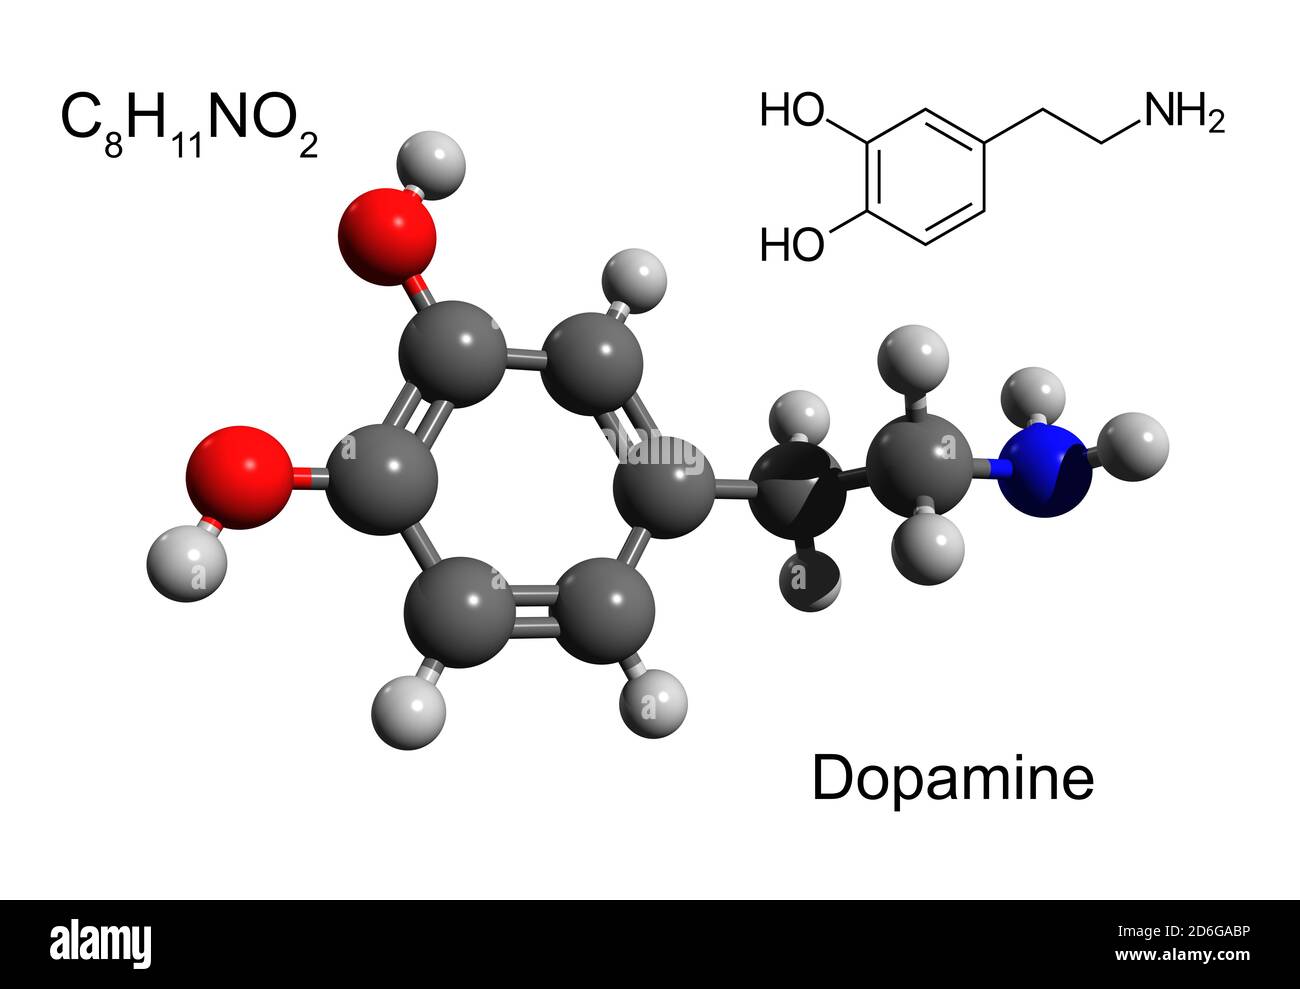 Fórmula química, fórmula estructural y modelo 3D de bola y palo de una hormona y neurotransmisor dopamina, fondo blanco Foto de stock